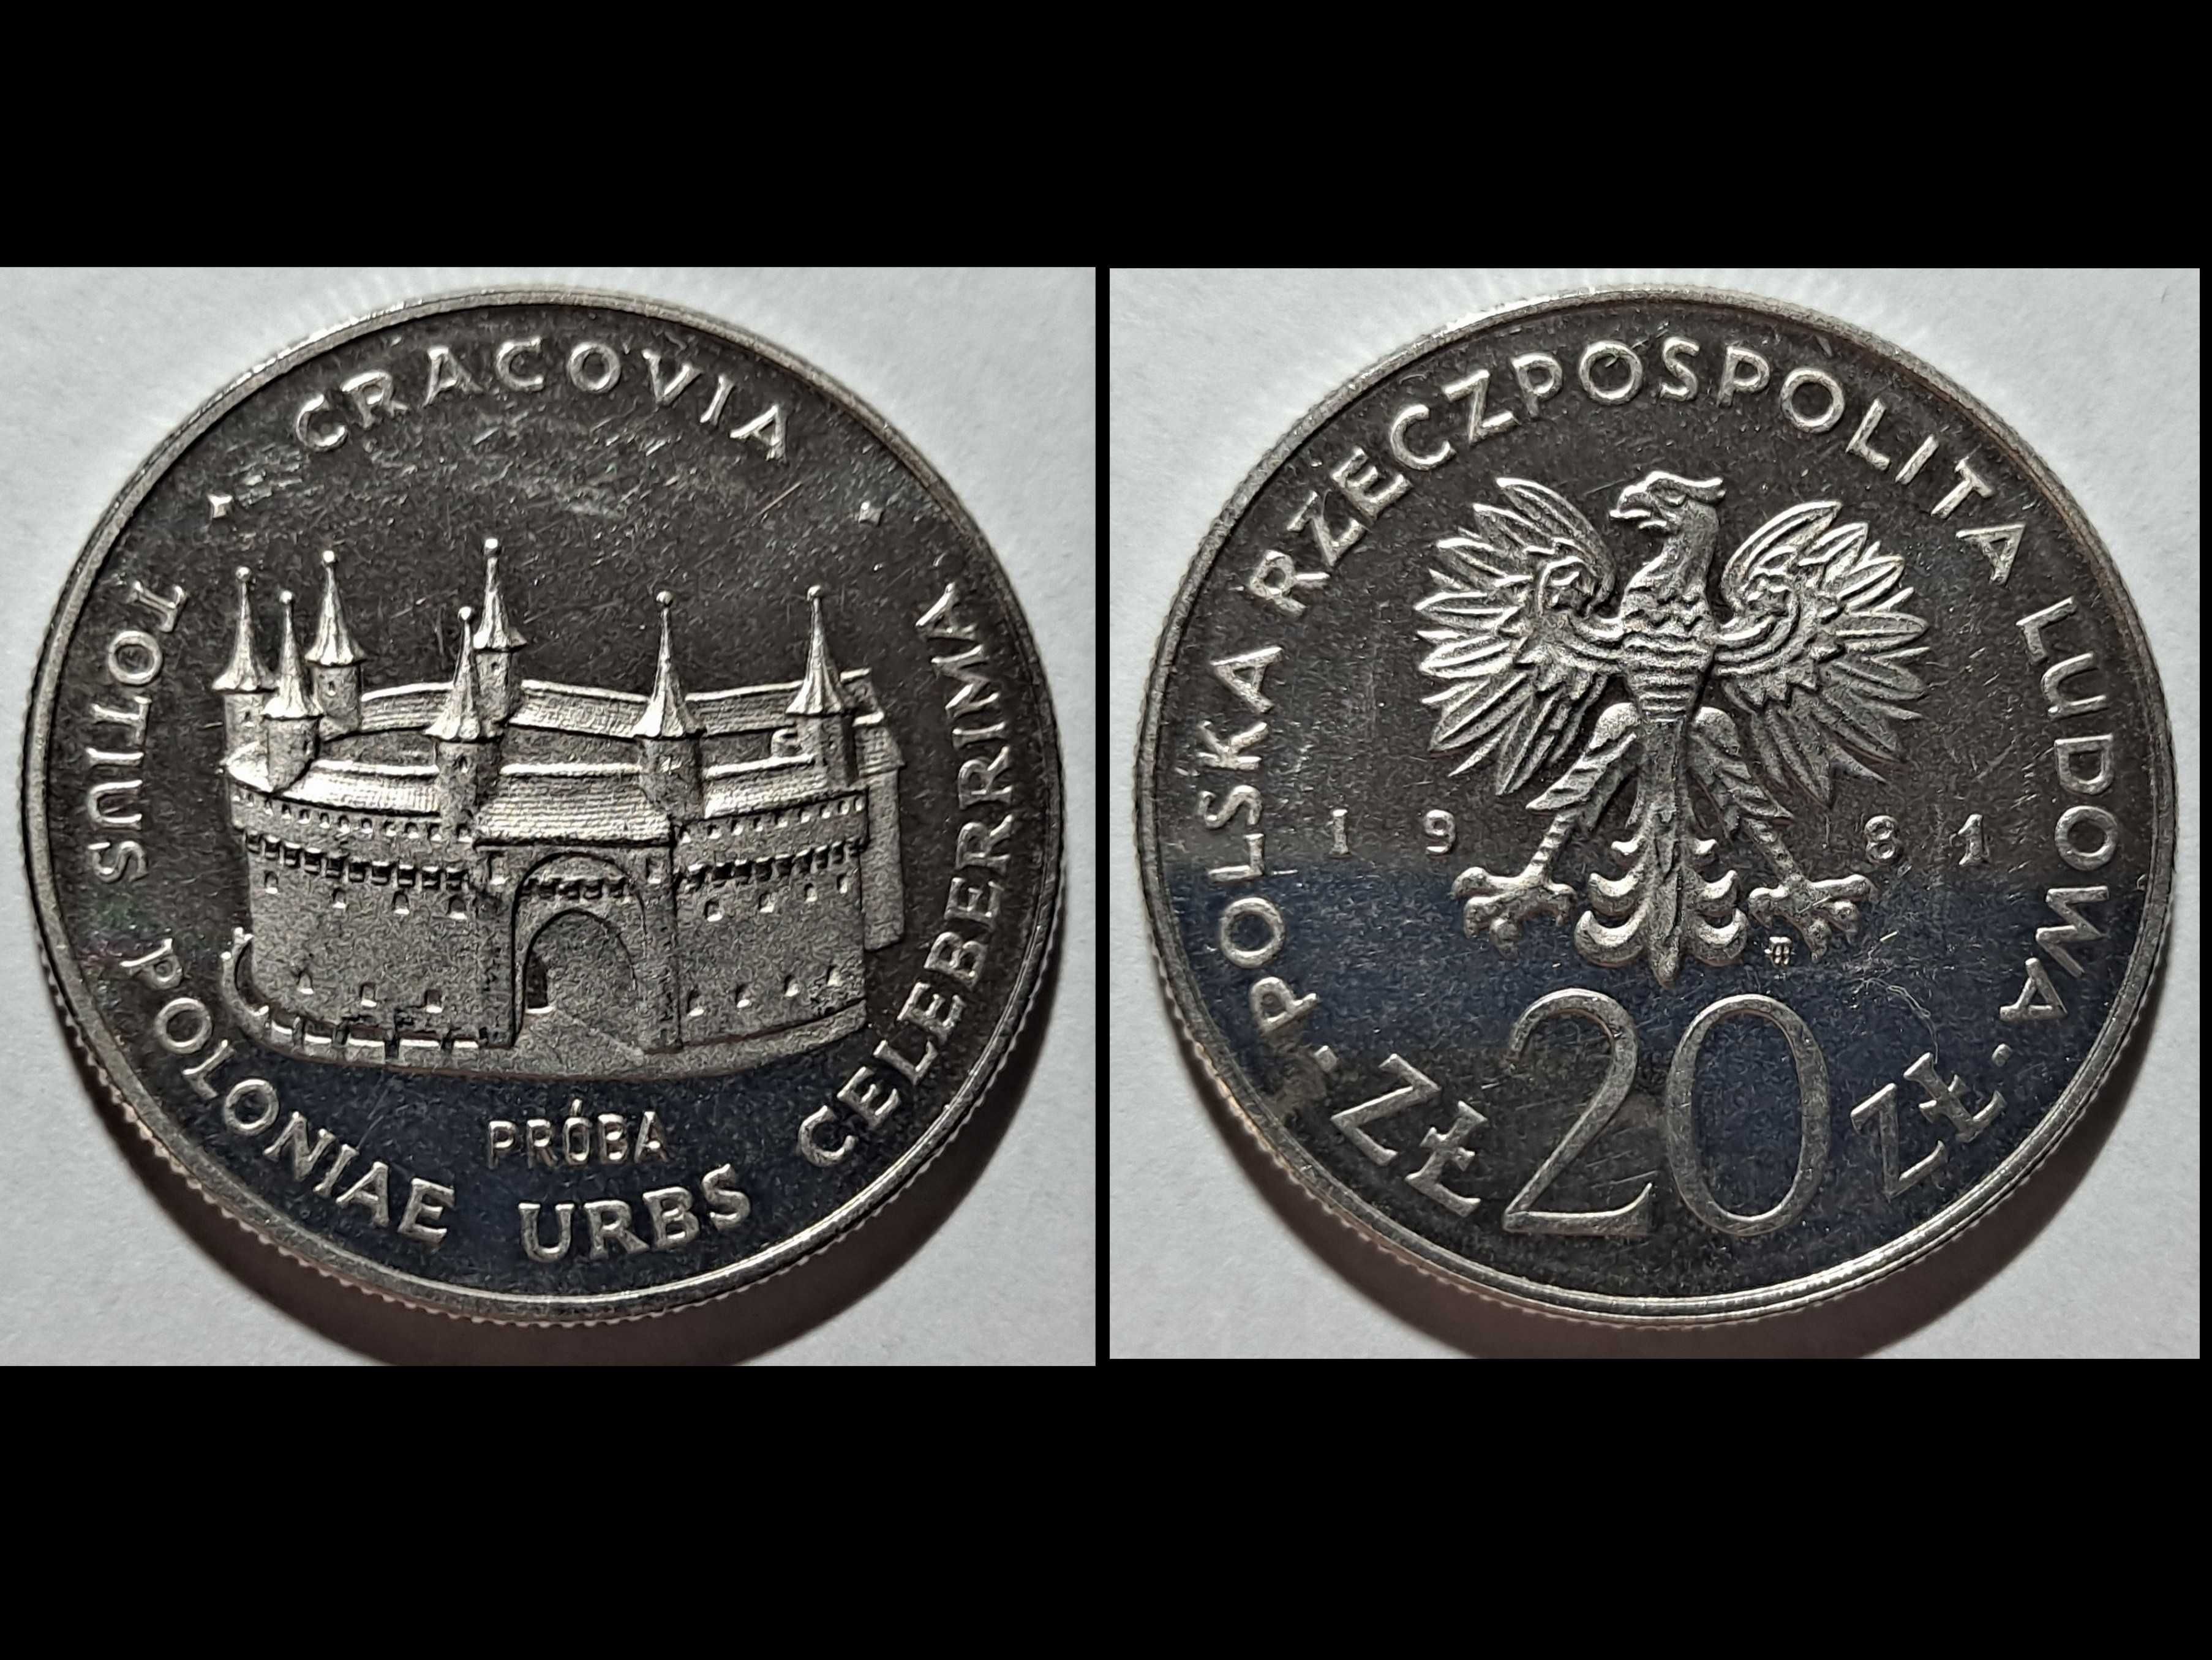 moneta próbna - 20 złotych - Krakowski Barbakan - PRL -1981 r.